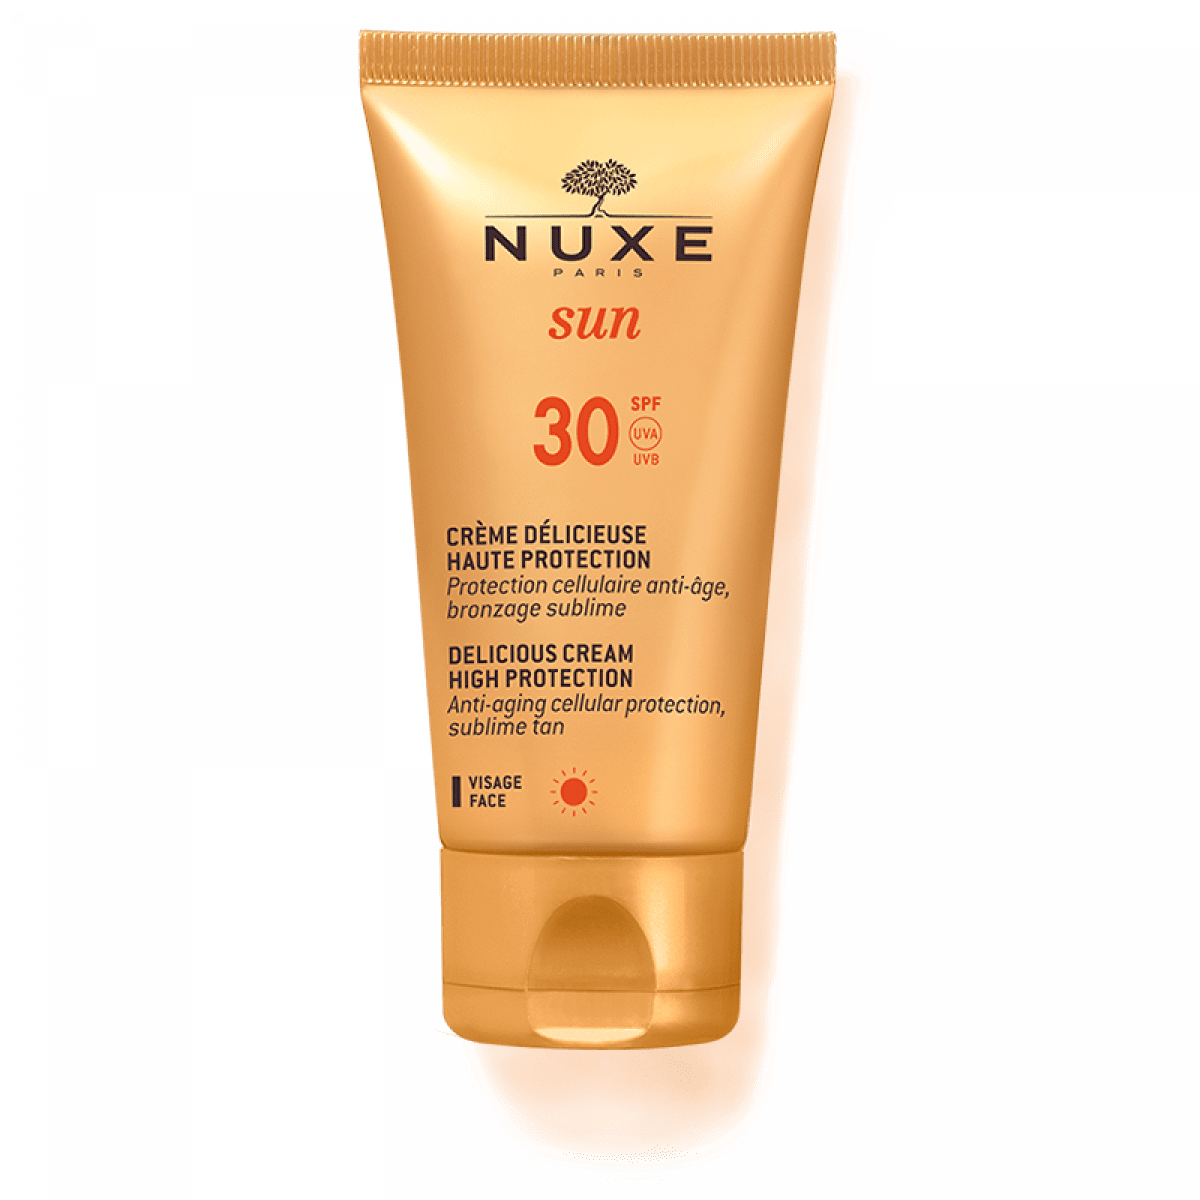 Nuxe Sun - Delicious Cream High Protection Spf 30